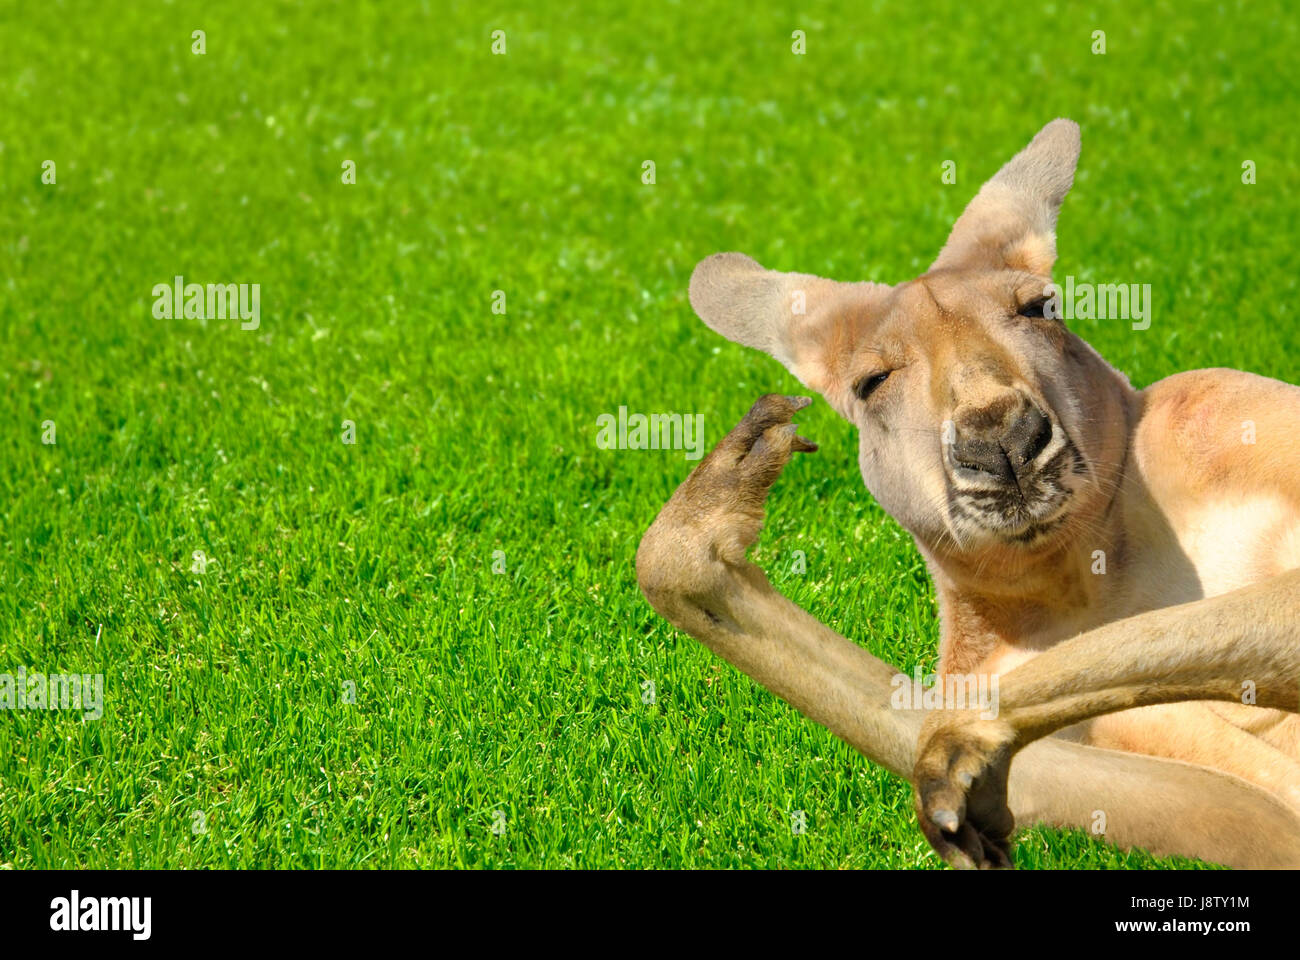 kangaroo in amusing pose lying on lawn Stock Photo